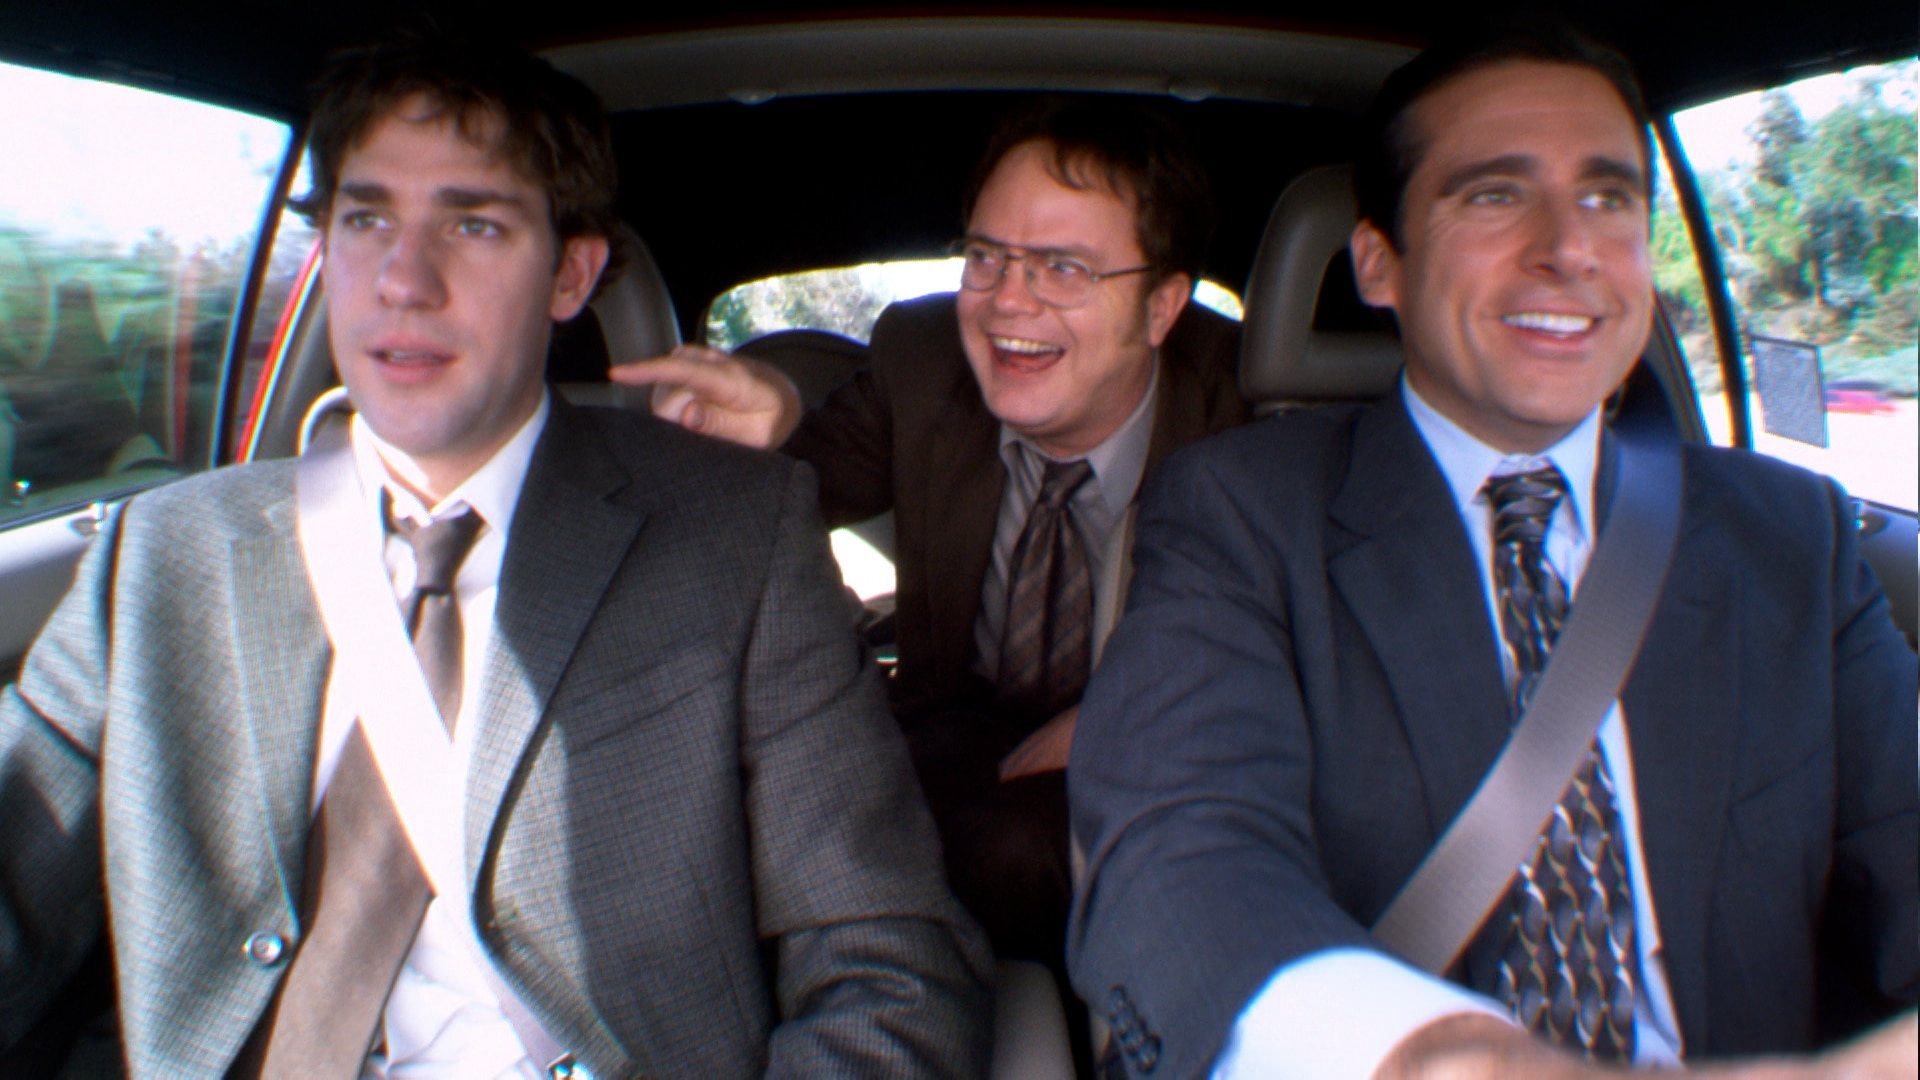 Watch The Office Season 4, Episode 3: Dunder Mifflin Infinity Part 1